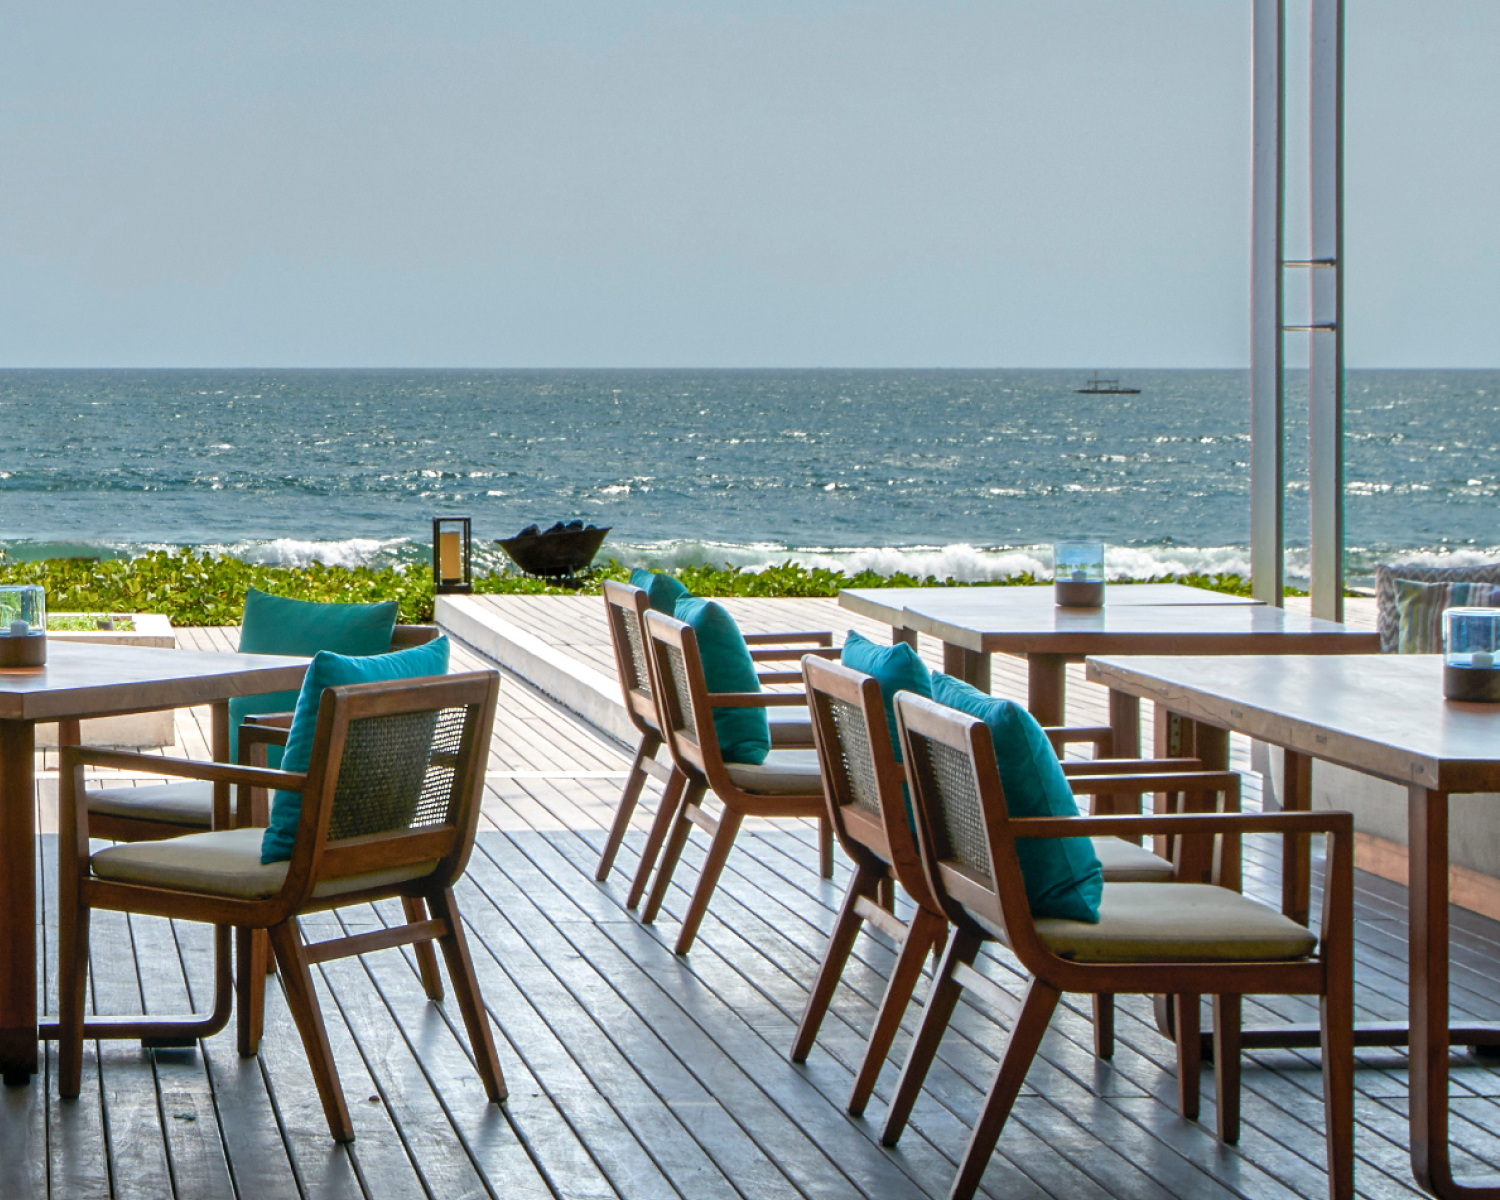 Outdoor tables overlooking the ocean.